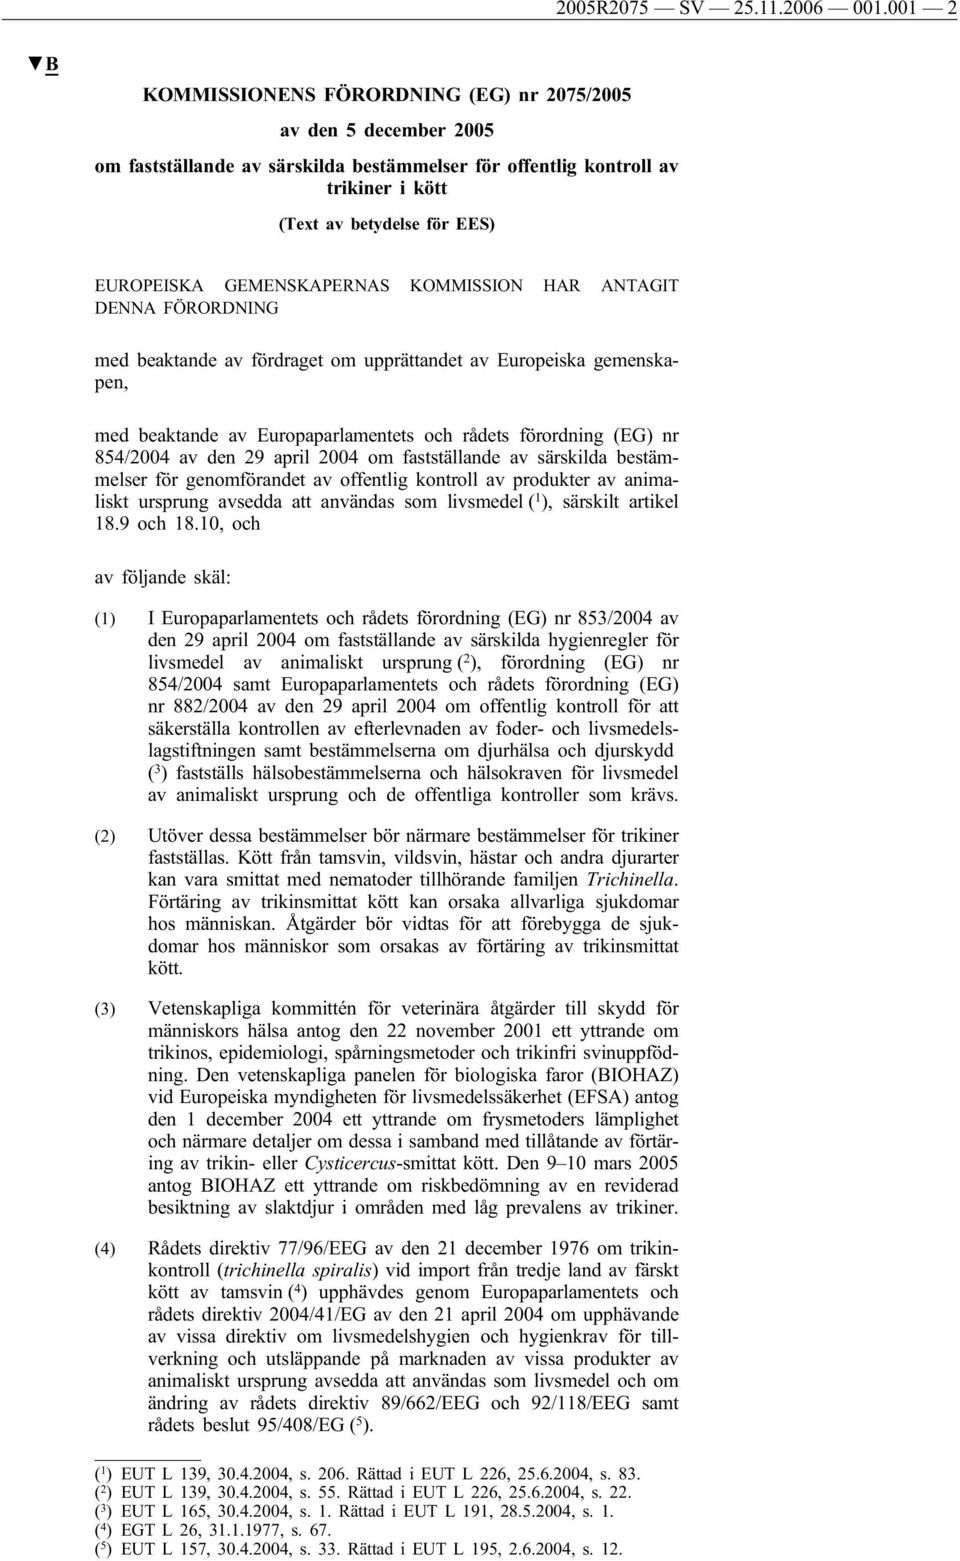 GEMENSKAPERNAS KOMMISSION HAR ANTAGIT DENNA FÖRORDNING med beaktande av fördraget om upprättandet av Europeiska gemenskapen, med beaktande av Europaparlamentets och rådets förordning (EG) nr 854/2004